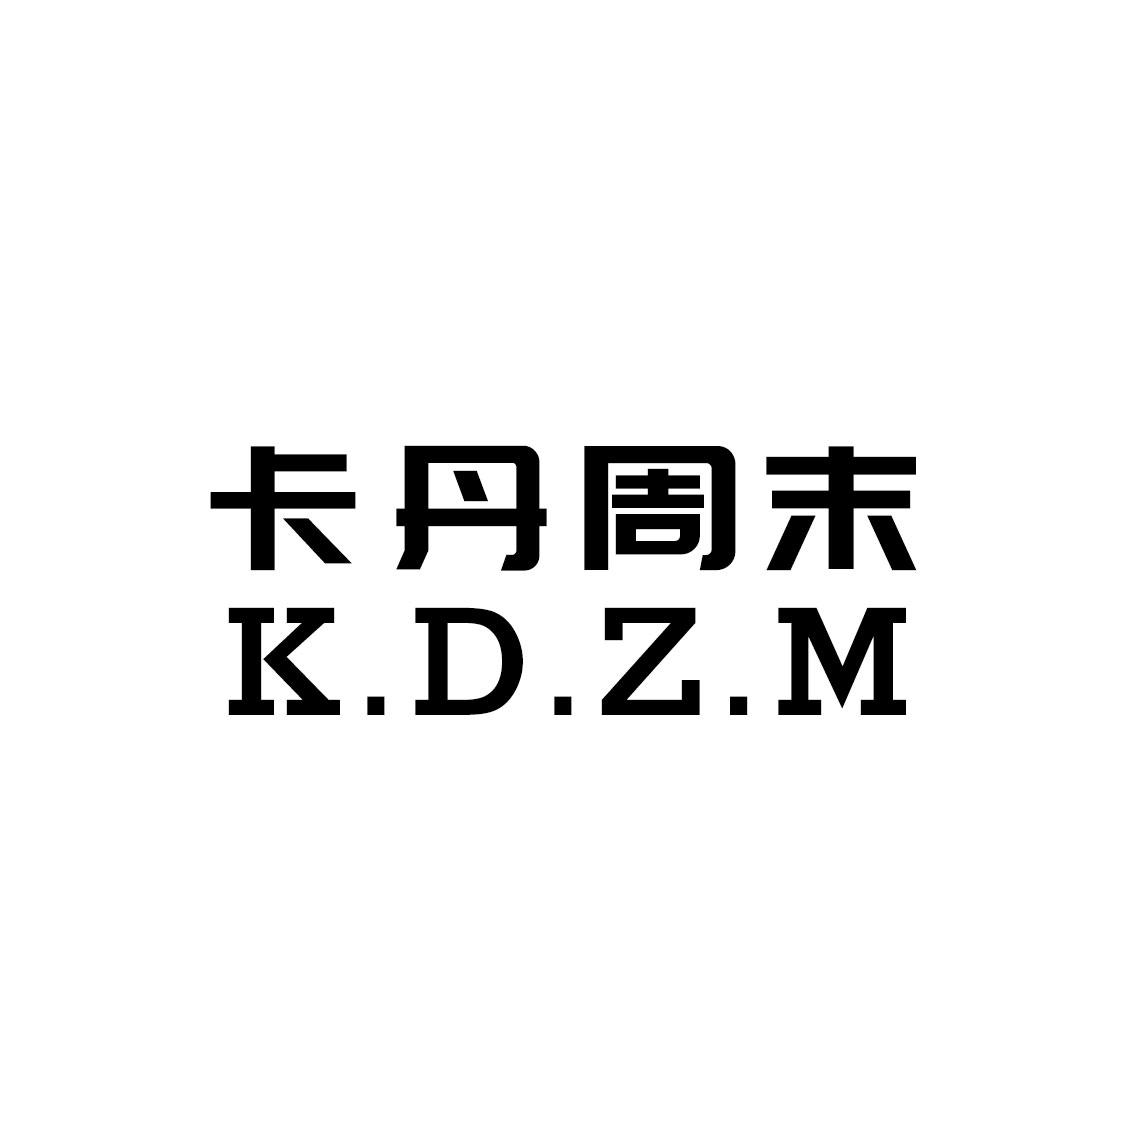 卡丹周末 K.D.Z.M